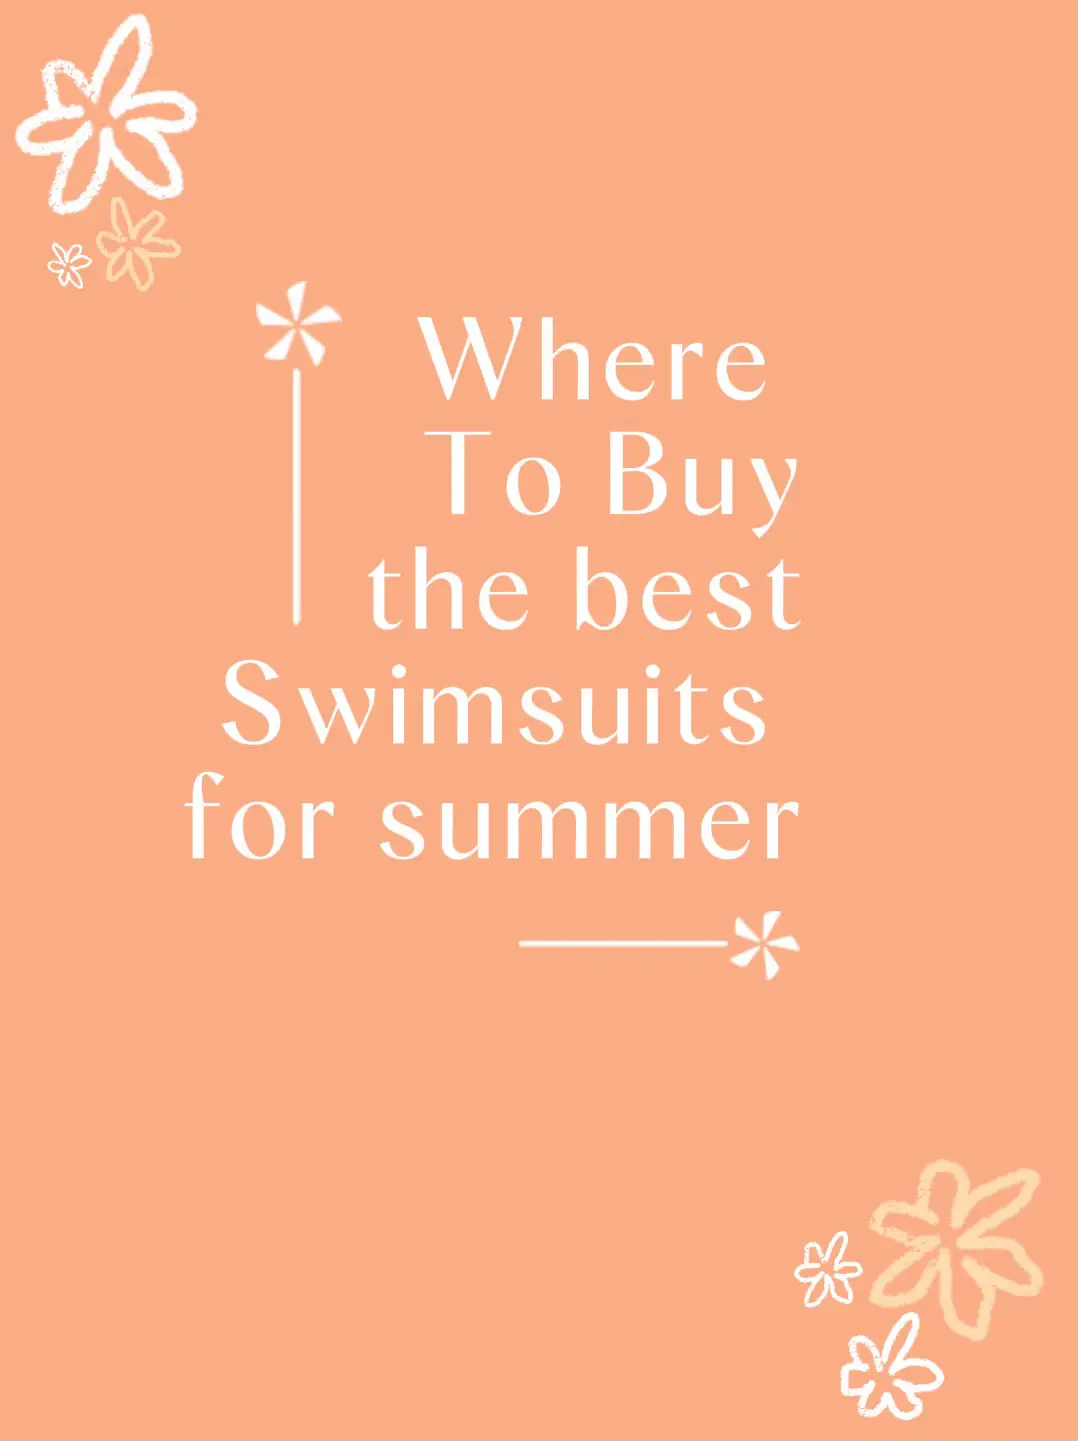 Best Swimwear For Summer